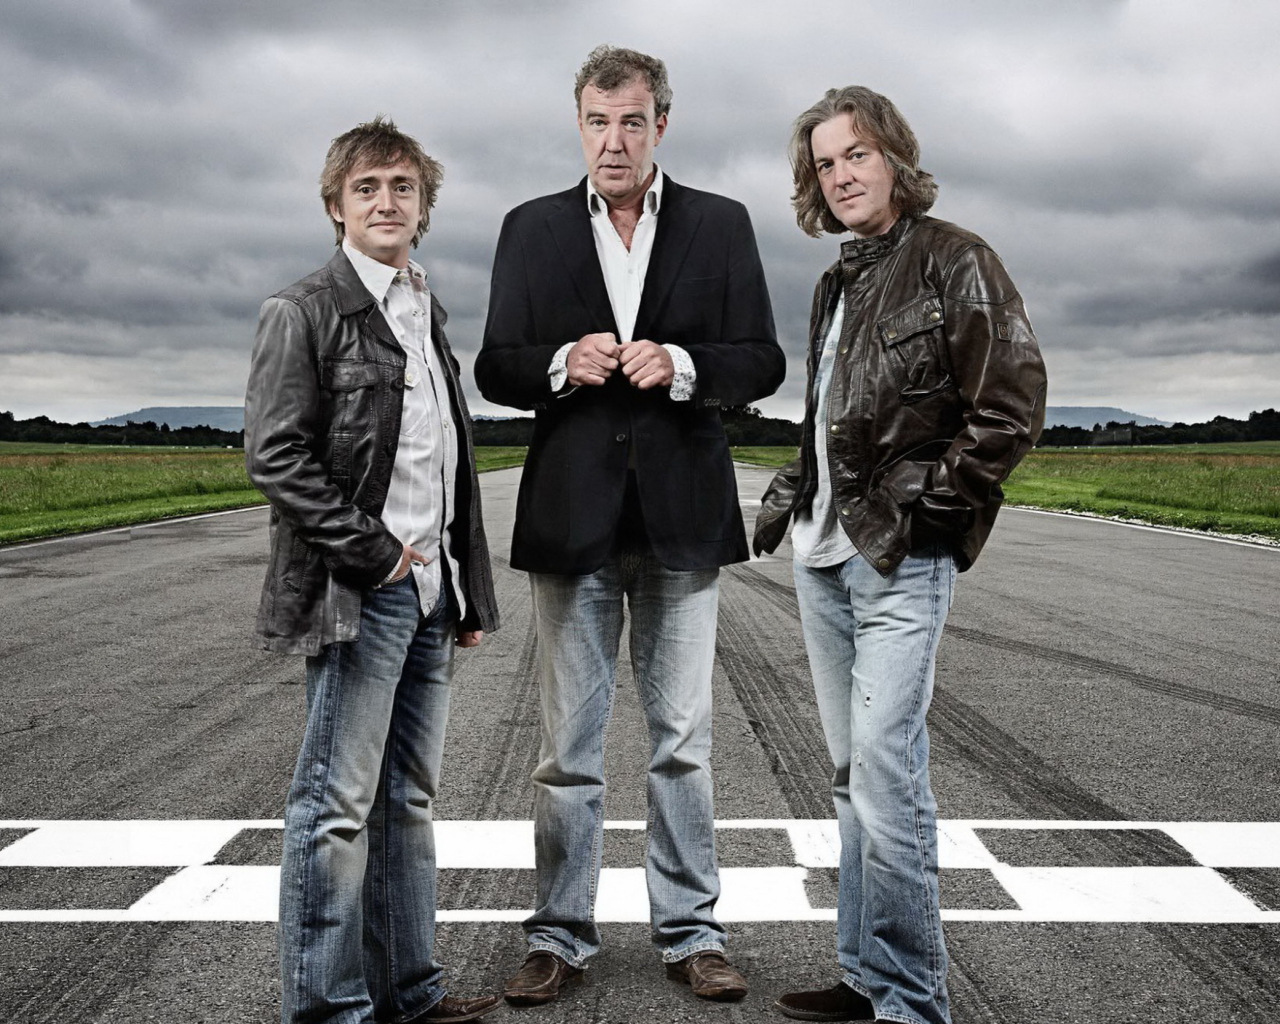 Das Top Gear Wallpaper 1280x1024